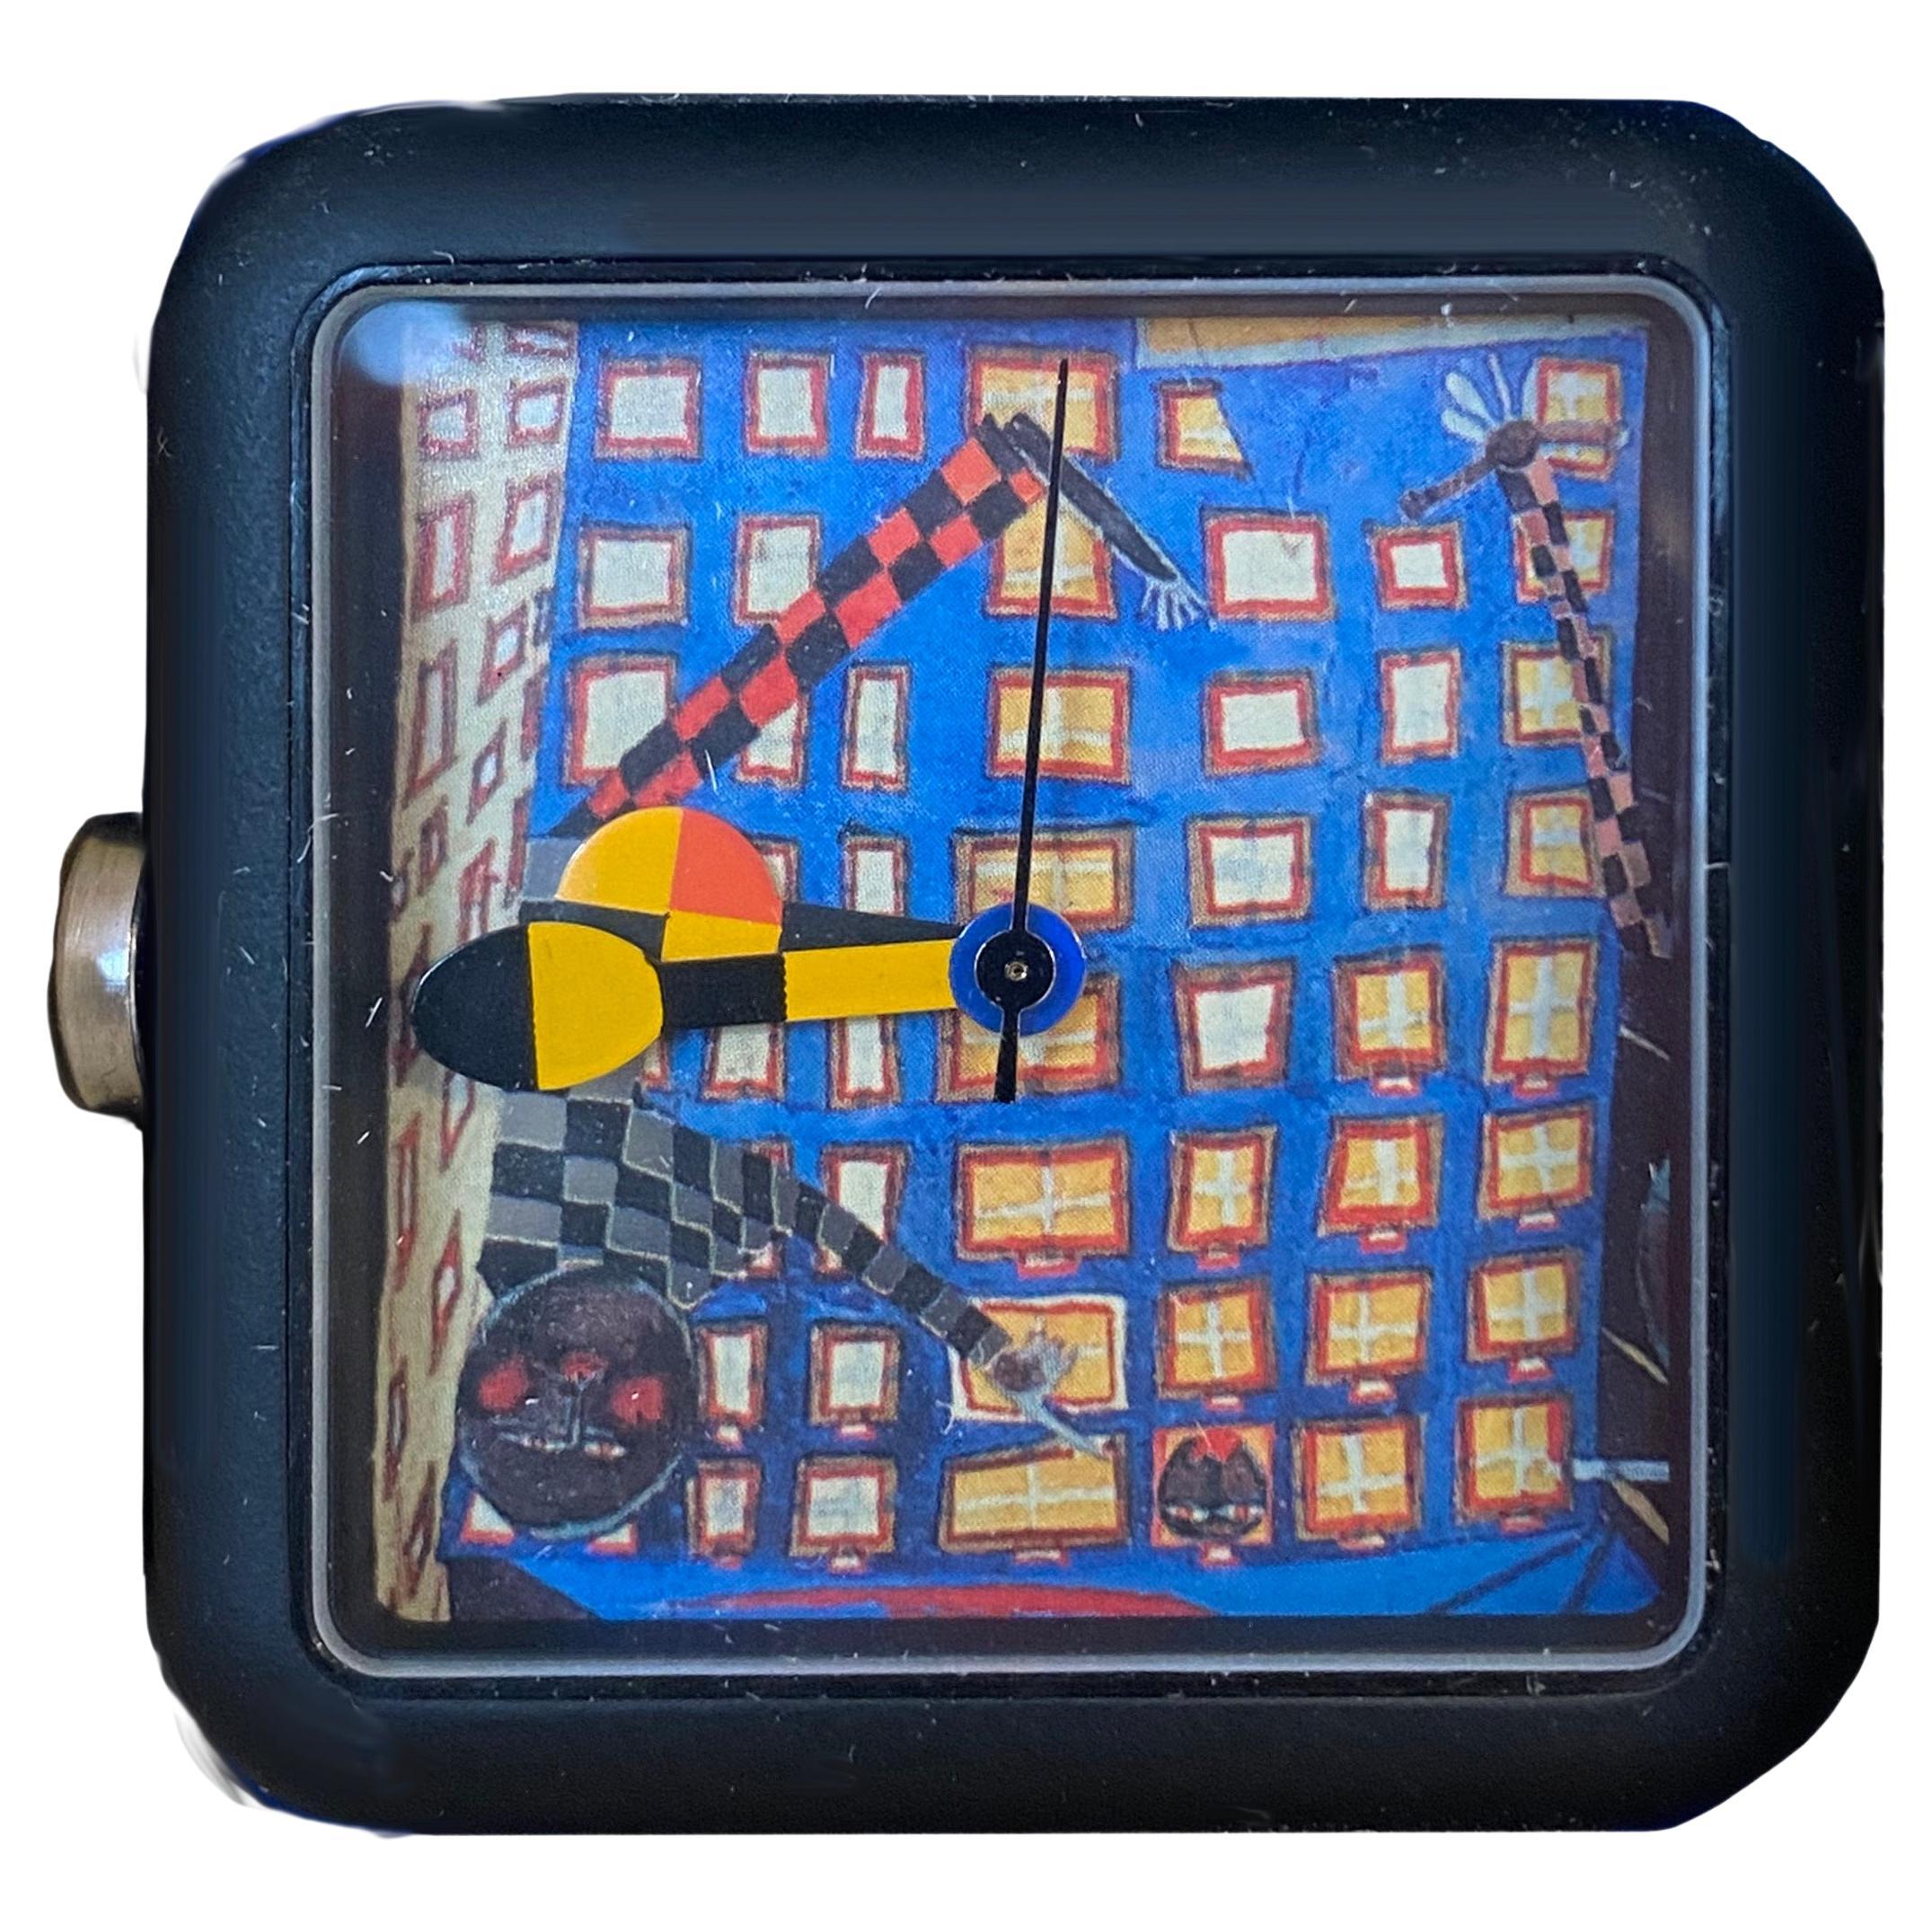 Watch Designed by the Austrian Artist Hundertwasser, 1995